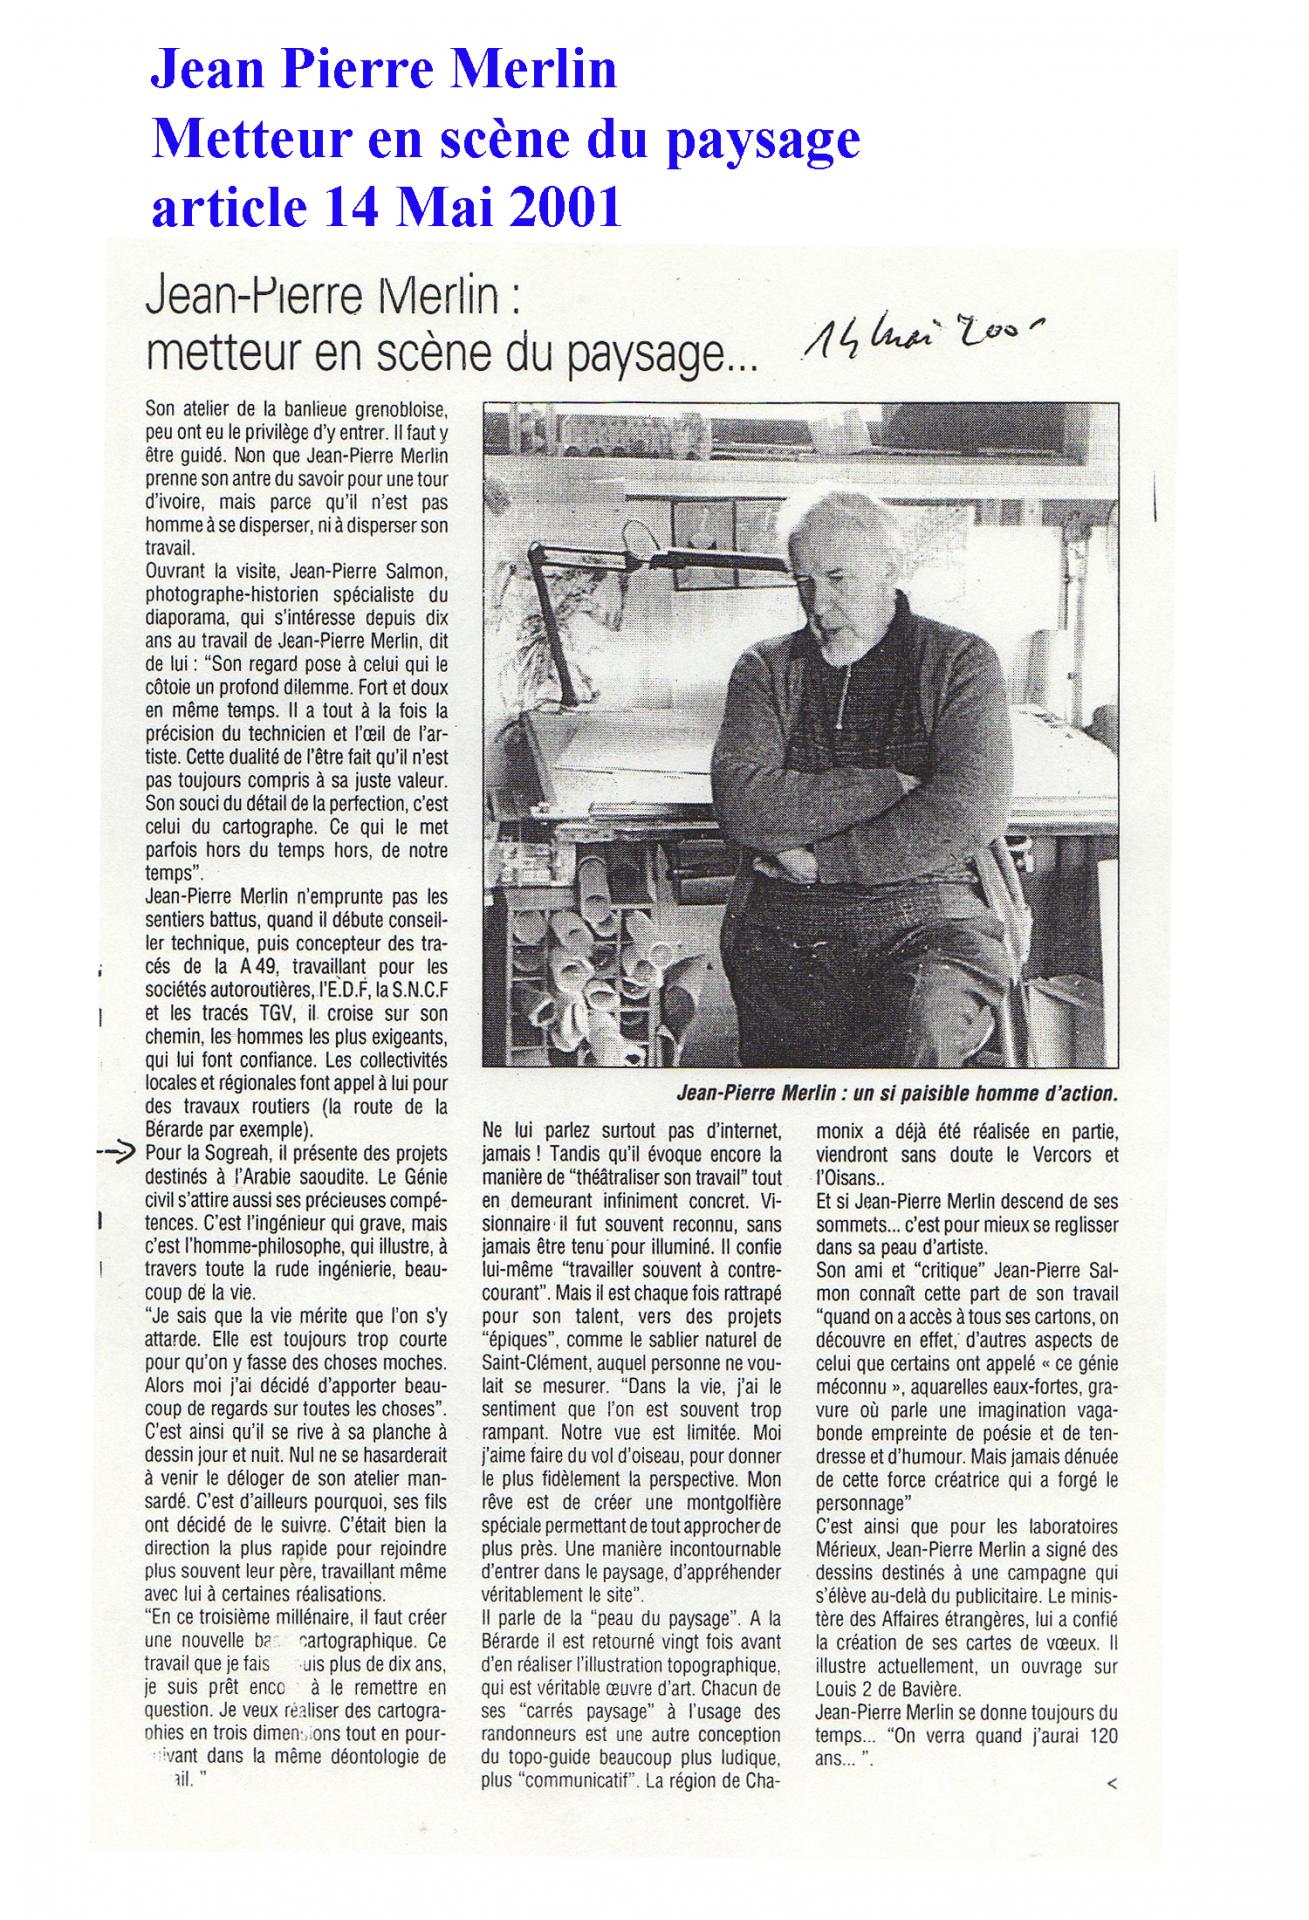 Merlin jean pierre presse 14 mai 2001 blog